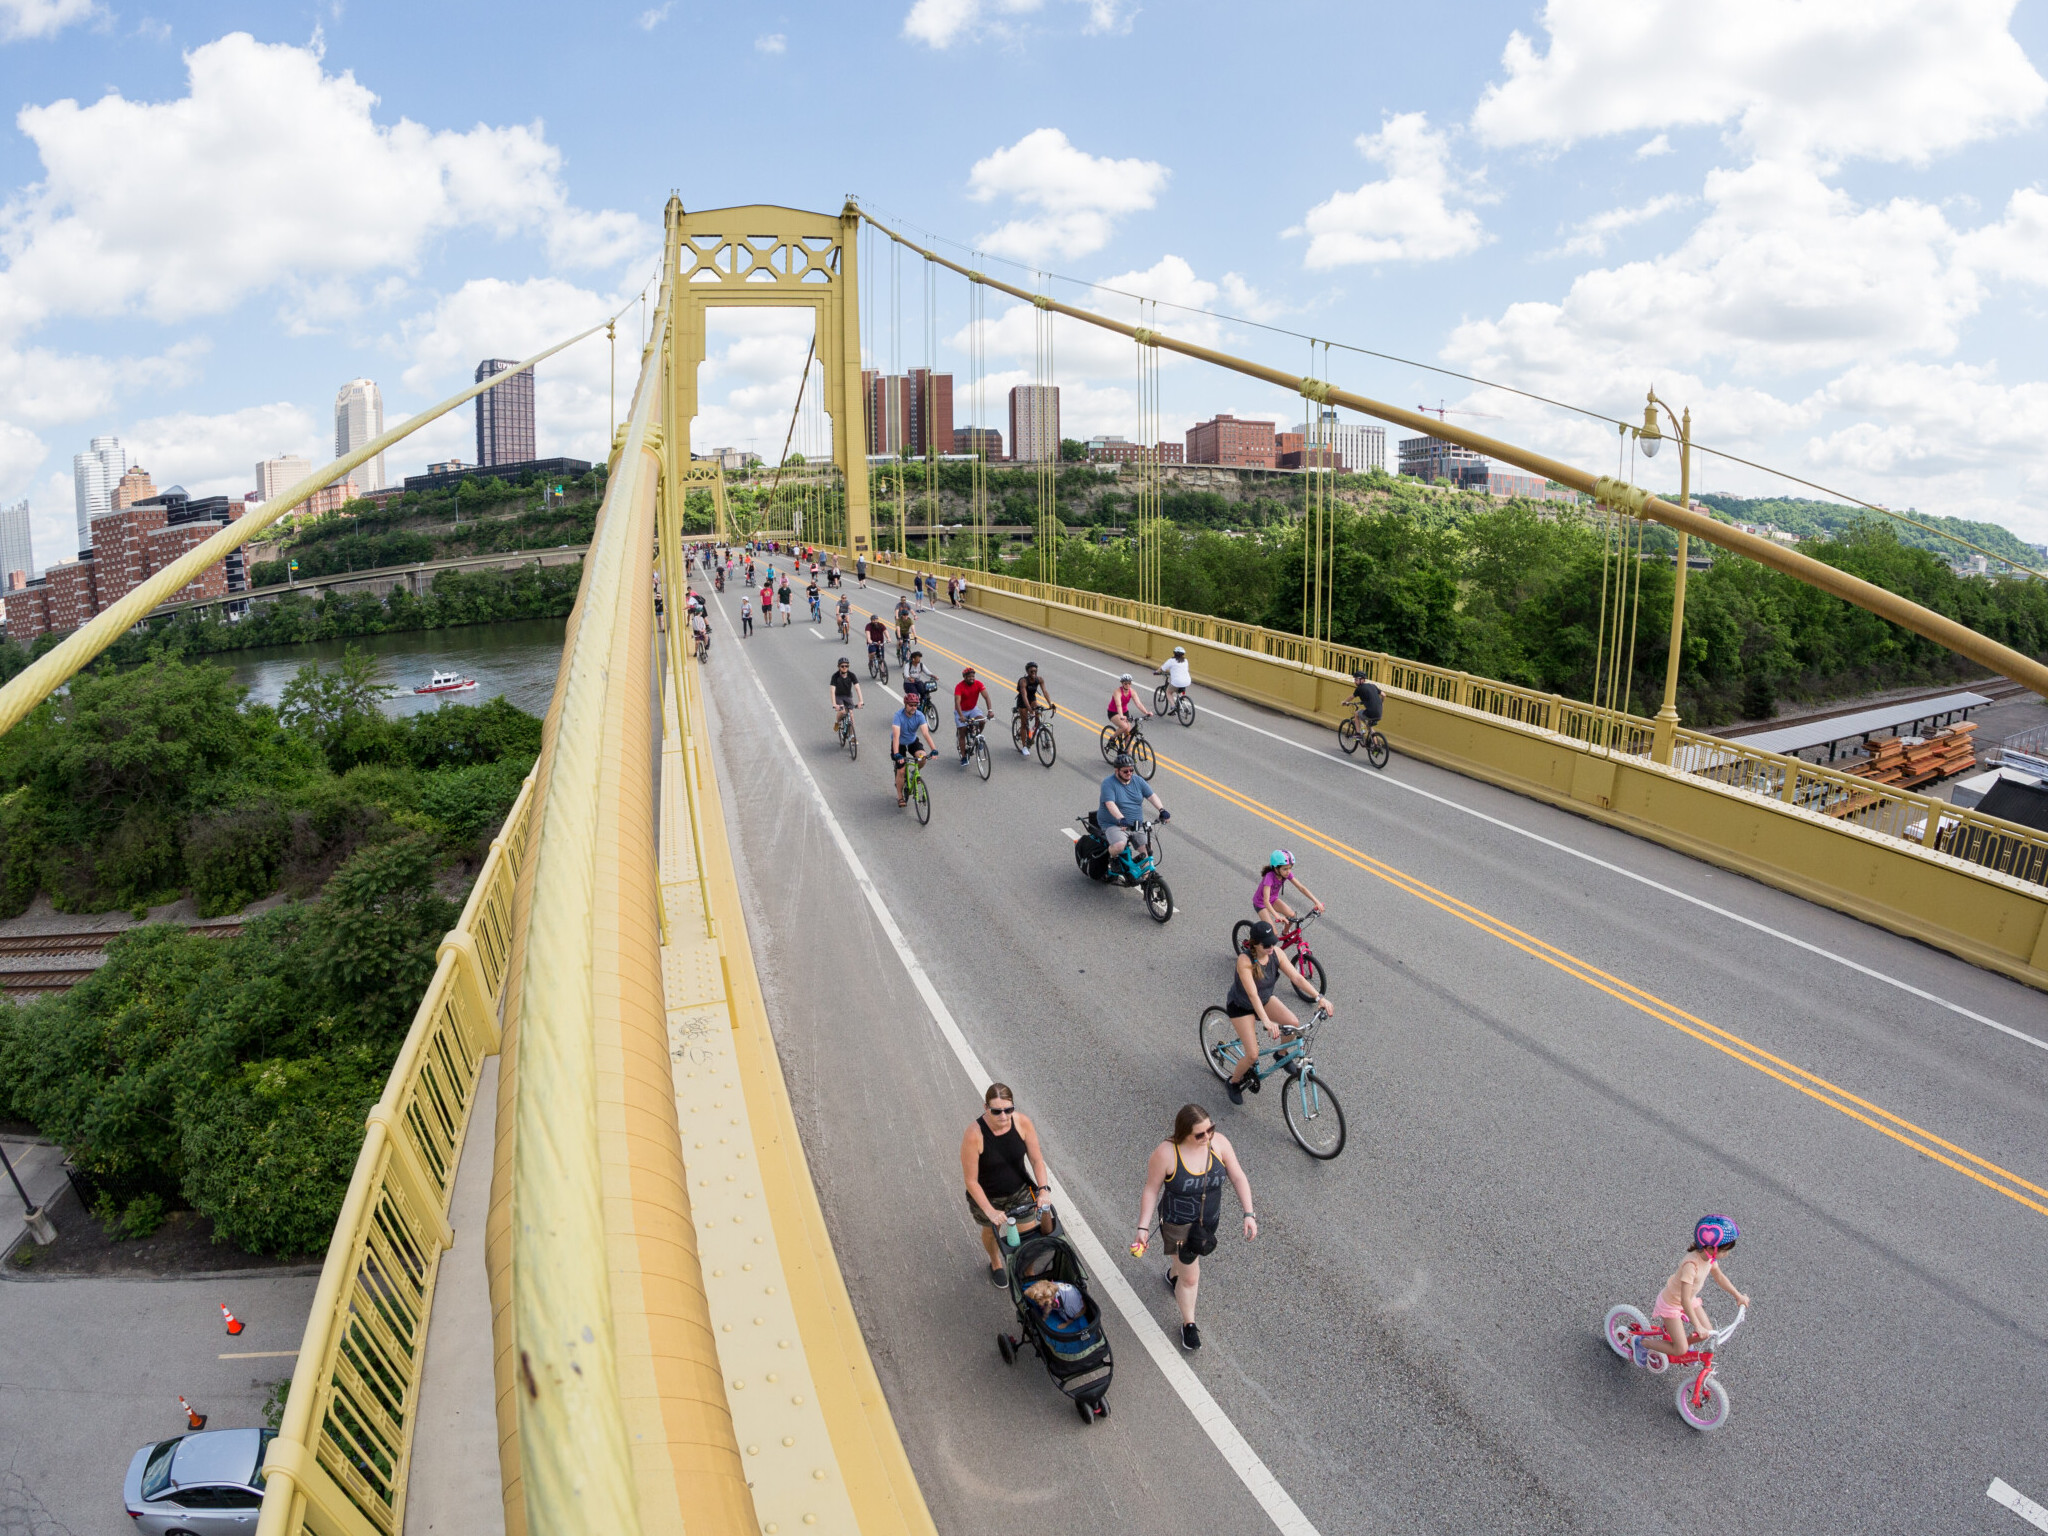 People walking and biking on a bridge in Pittsburgh